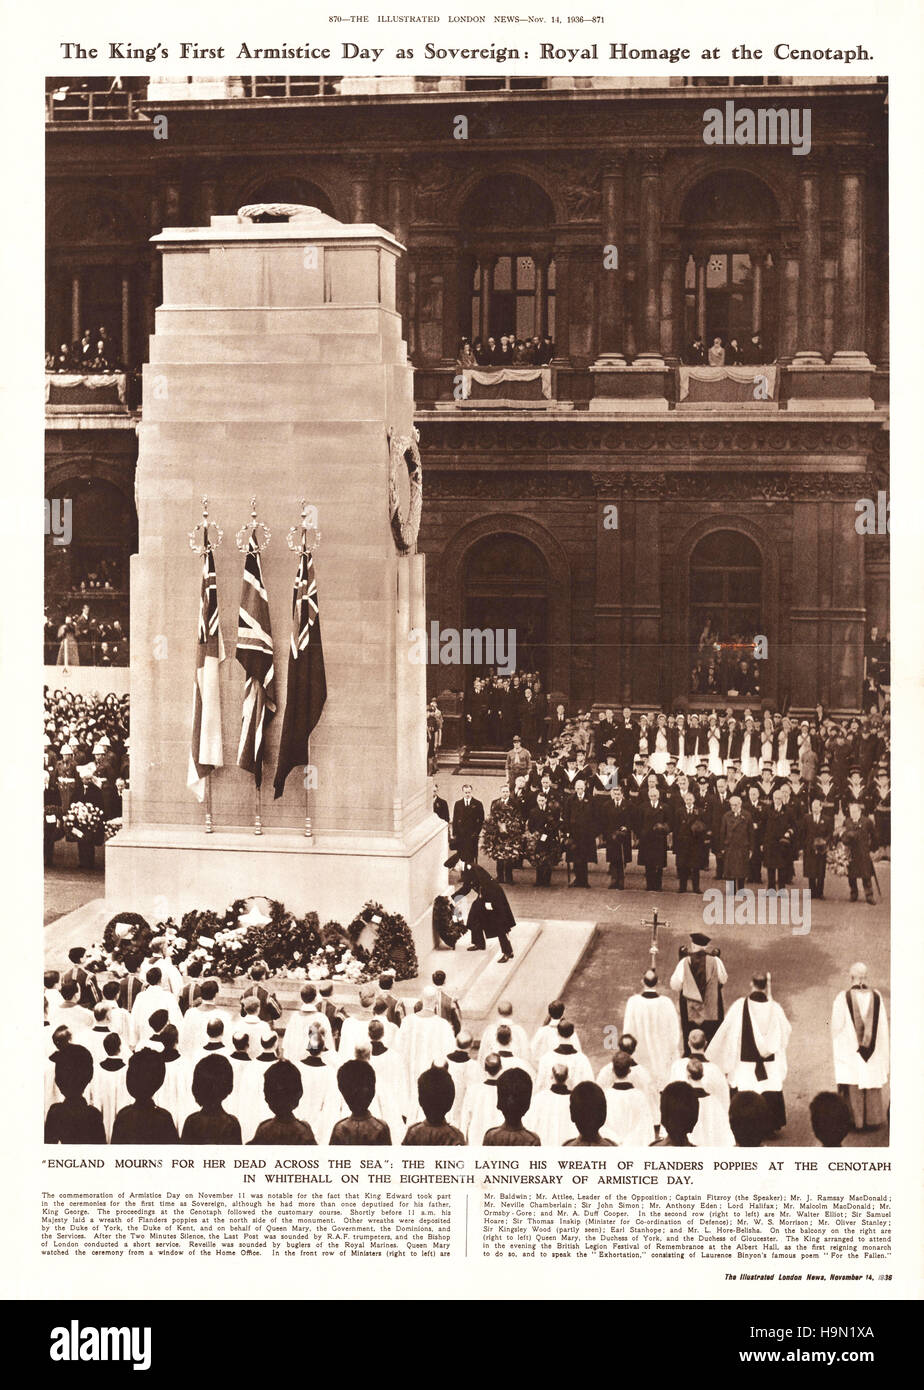 1936 Illustrated London News página 870-871 King Edward VIII establece ofrenda floral en el cenotafio Foto de stock